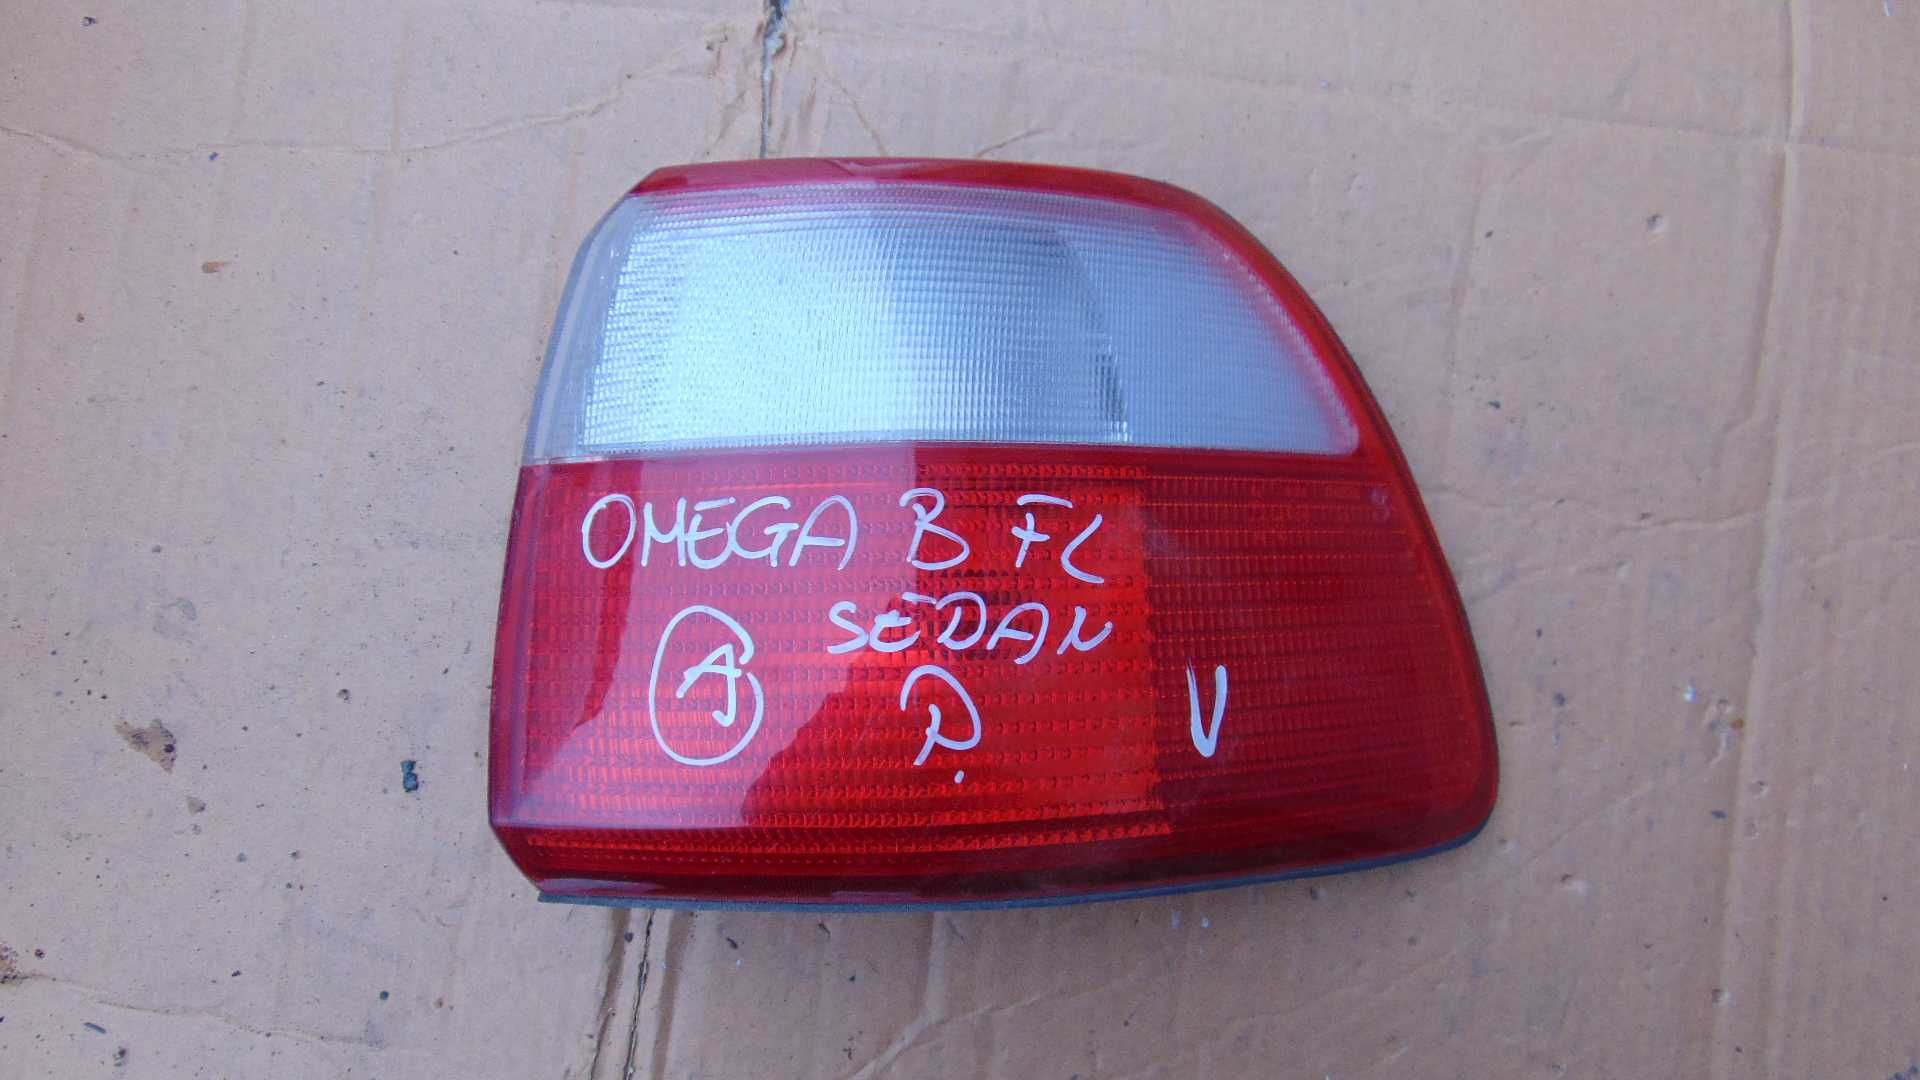 Gru3 Lampa prawa tylna prawy tył opel omega B lift sedan wysyłka